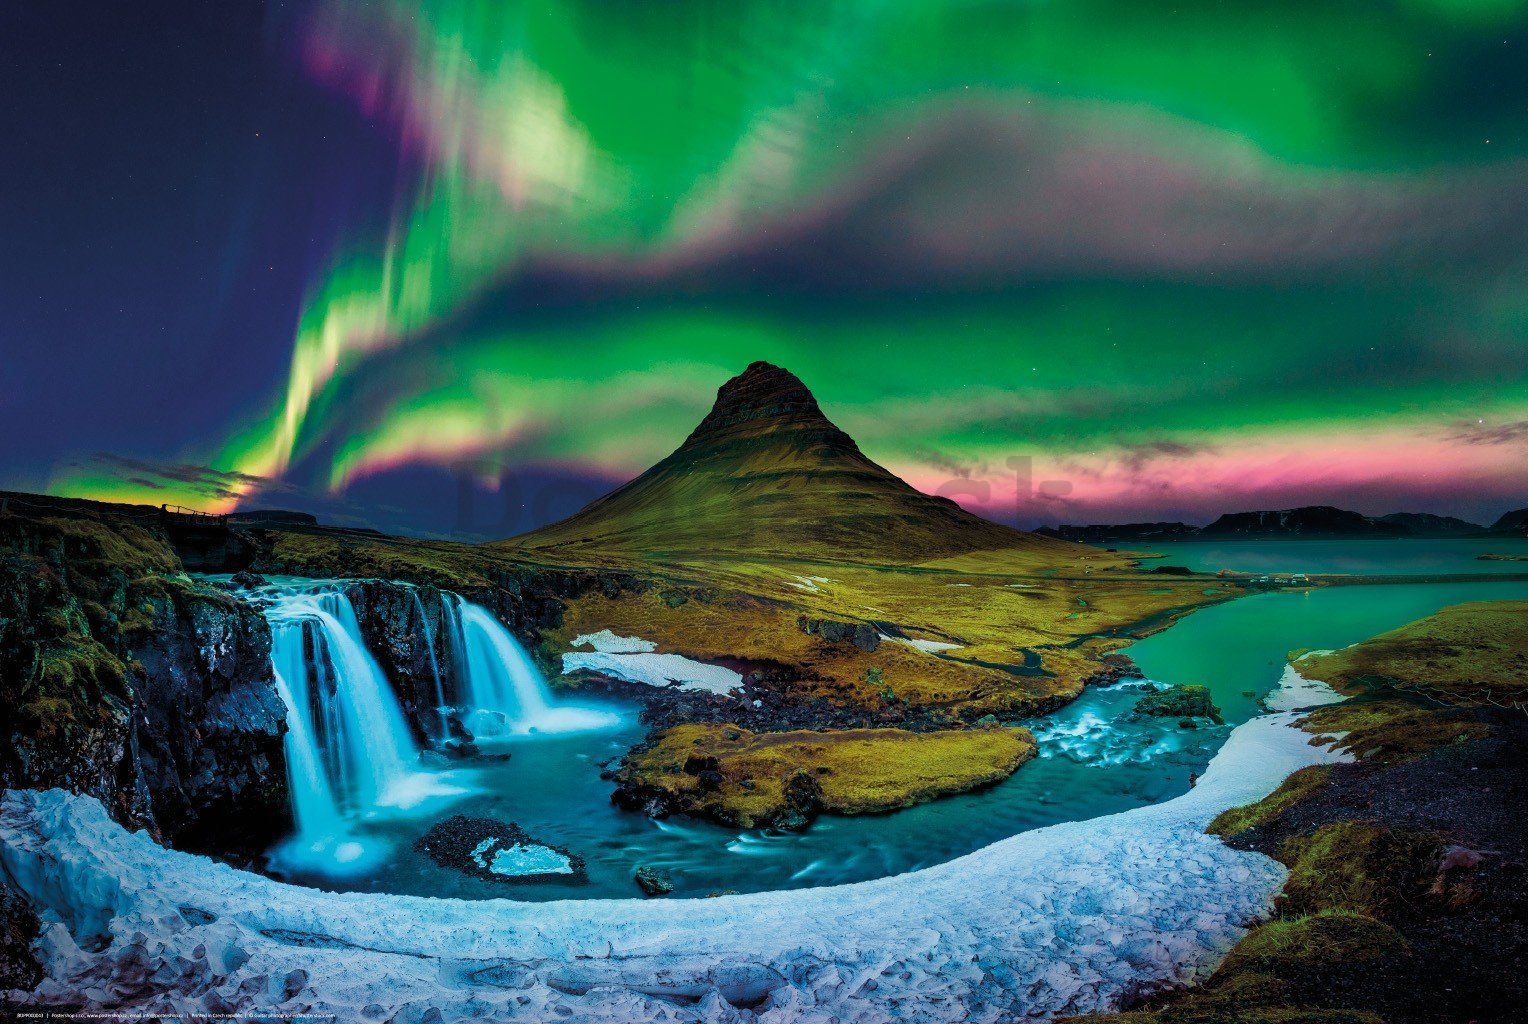 Plagát: Aurora na Islande